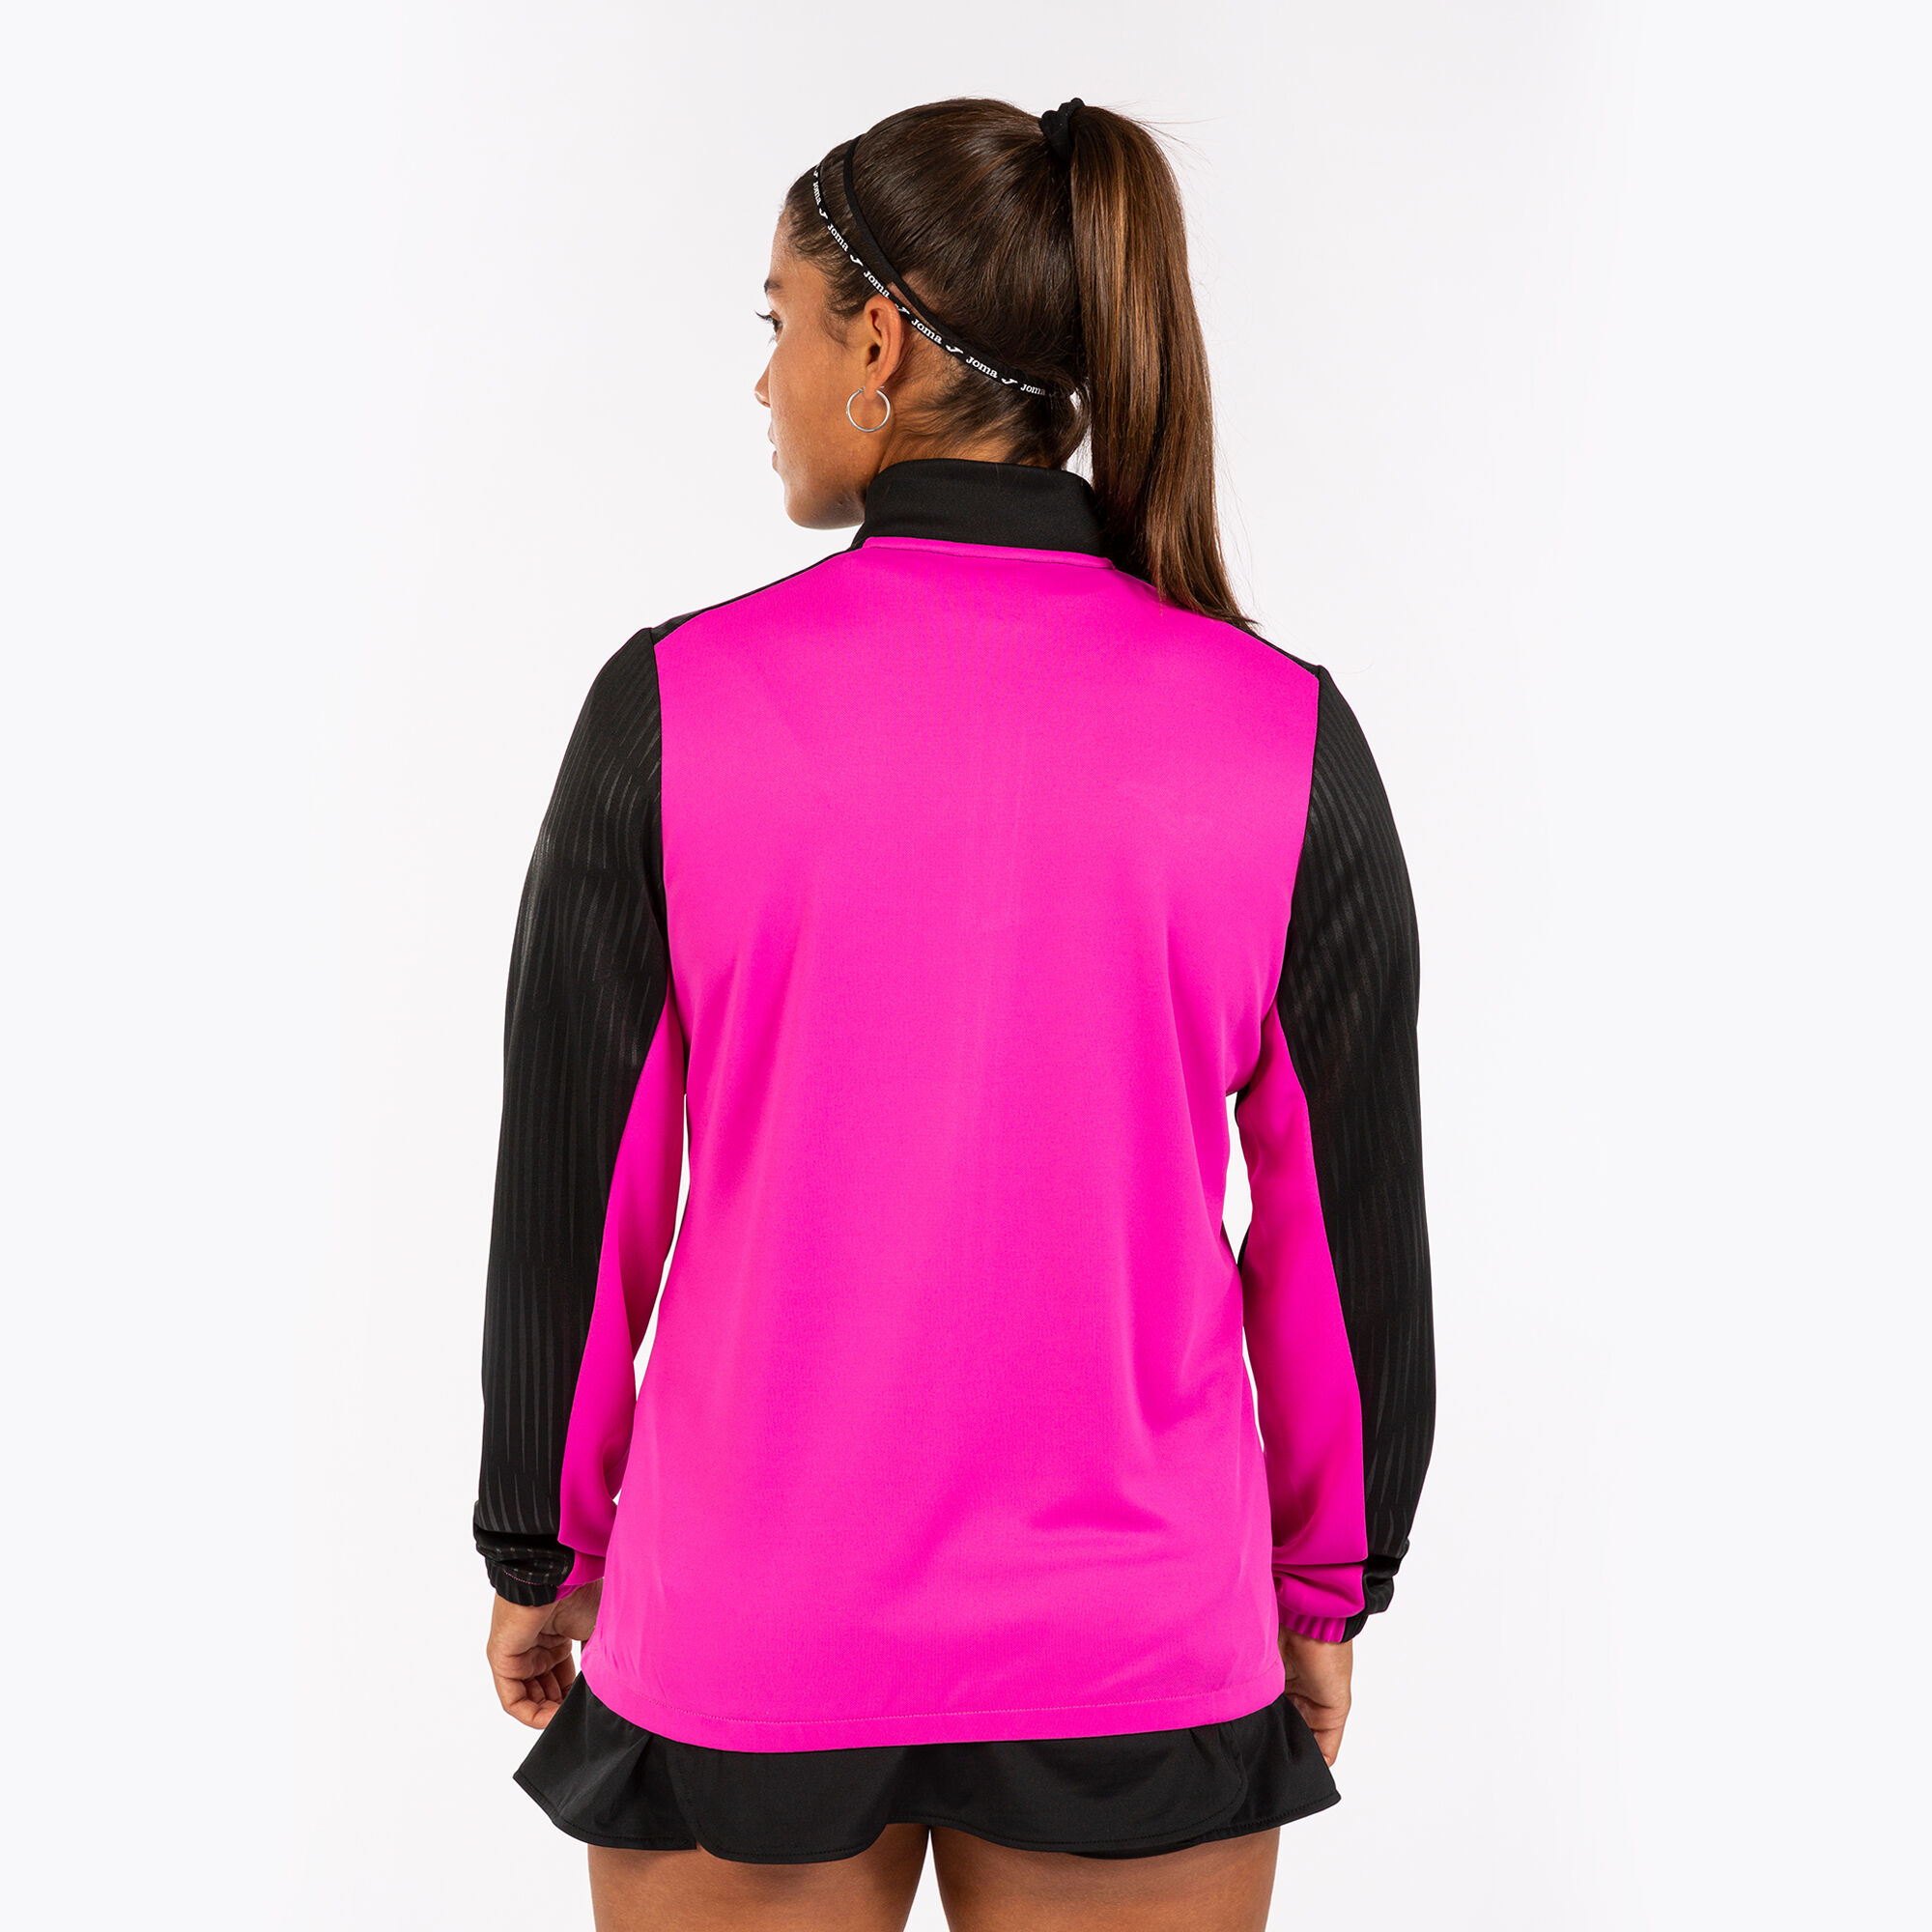 Jachetă damă Montreal roz fosforescent negru